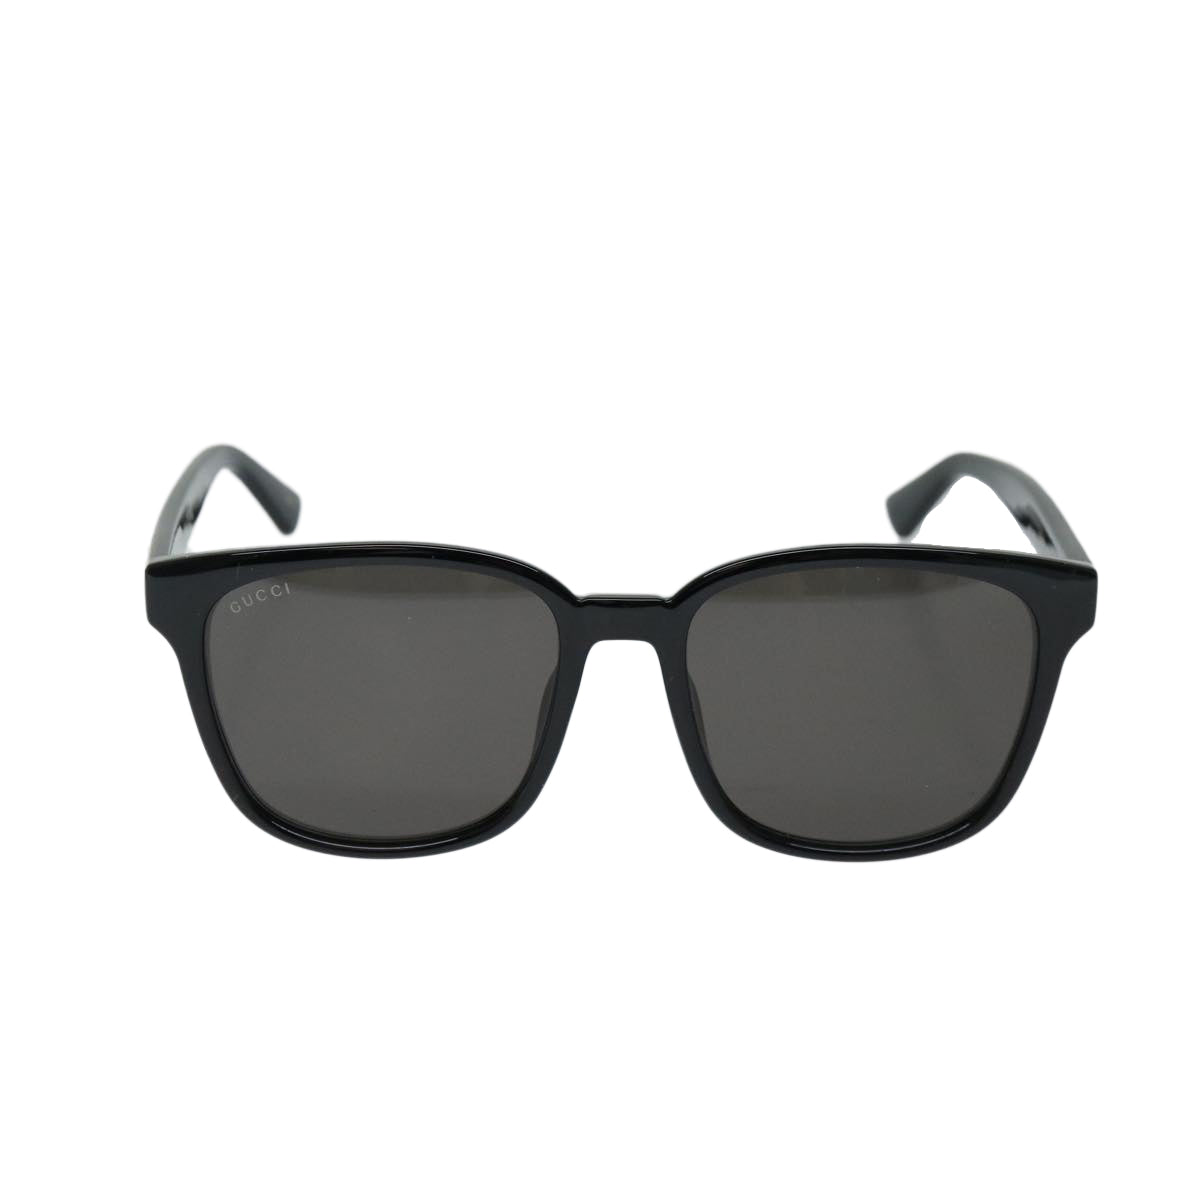 GUCCI Sunglasses plastic Black Auth 69125 - 0